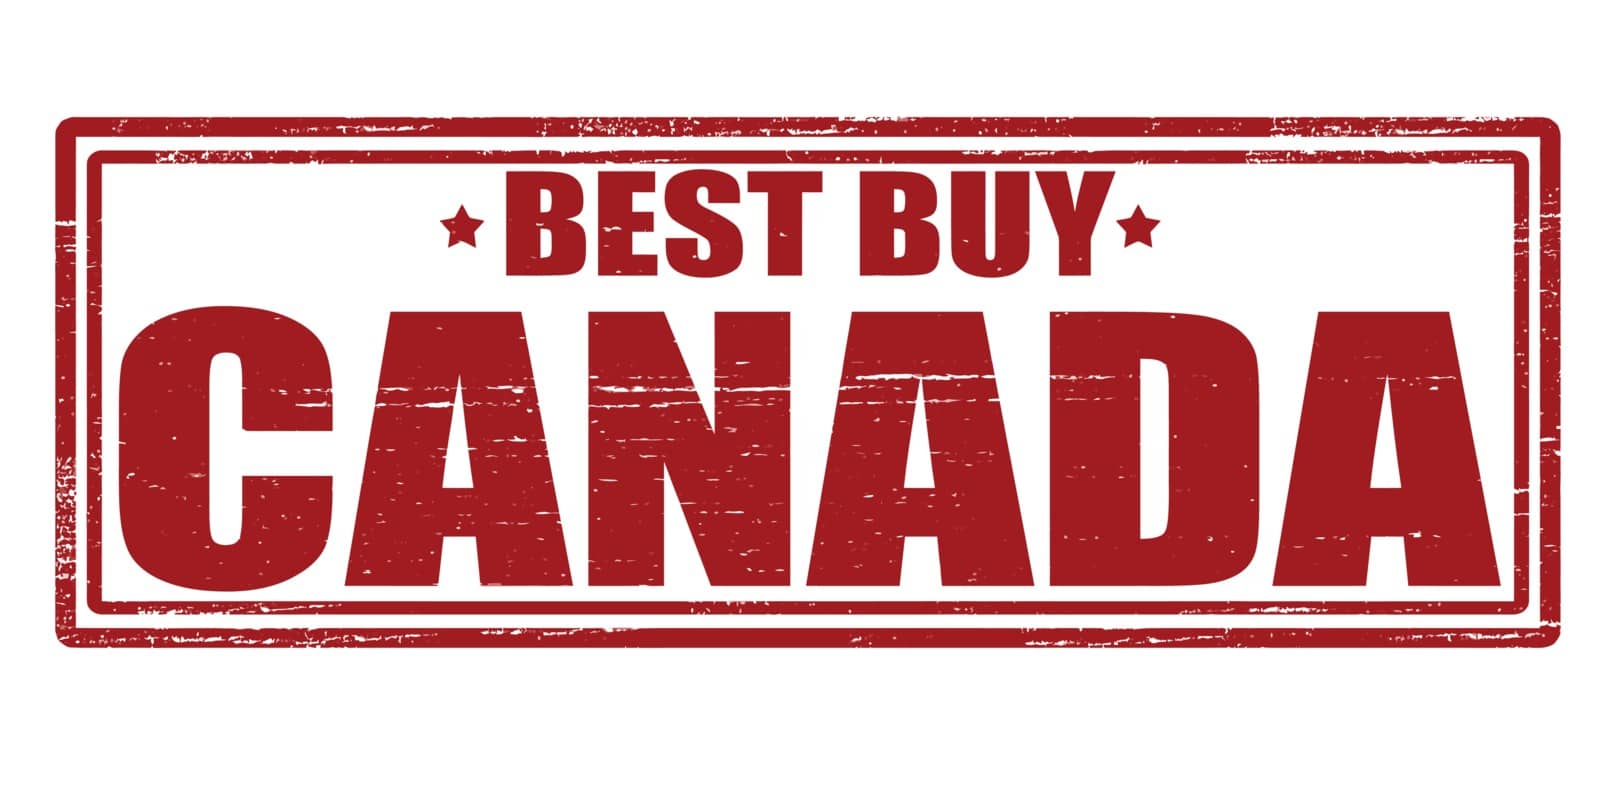 Best buy Canada by carmenbobo